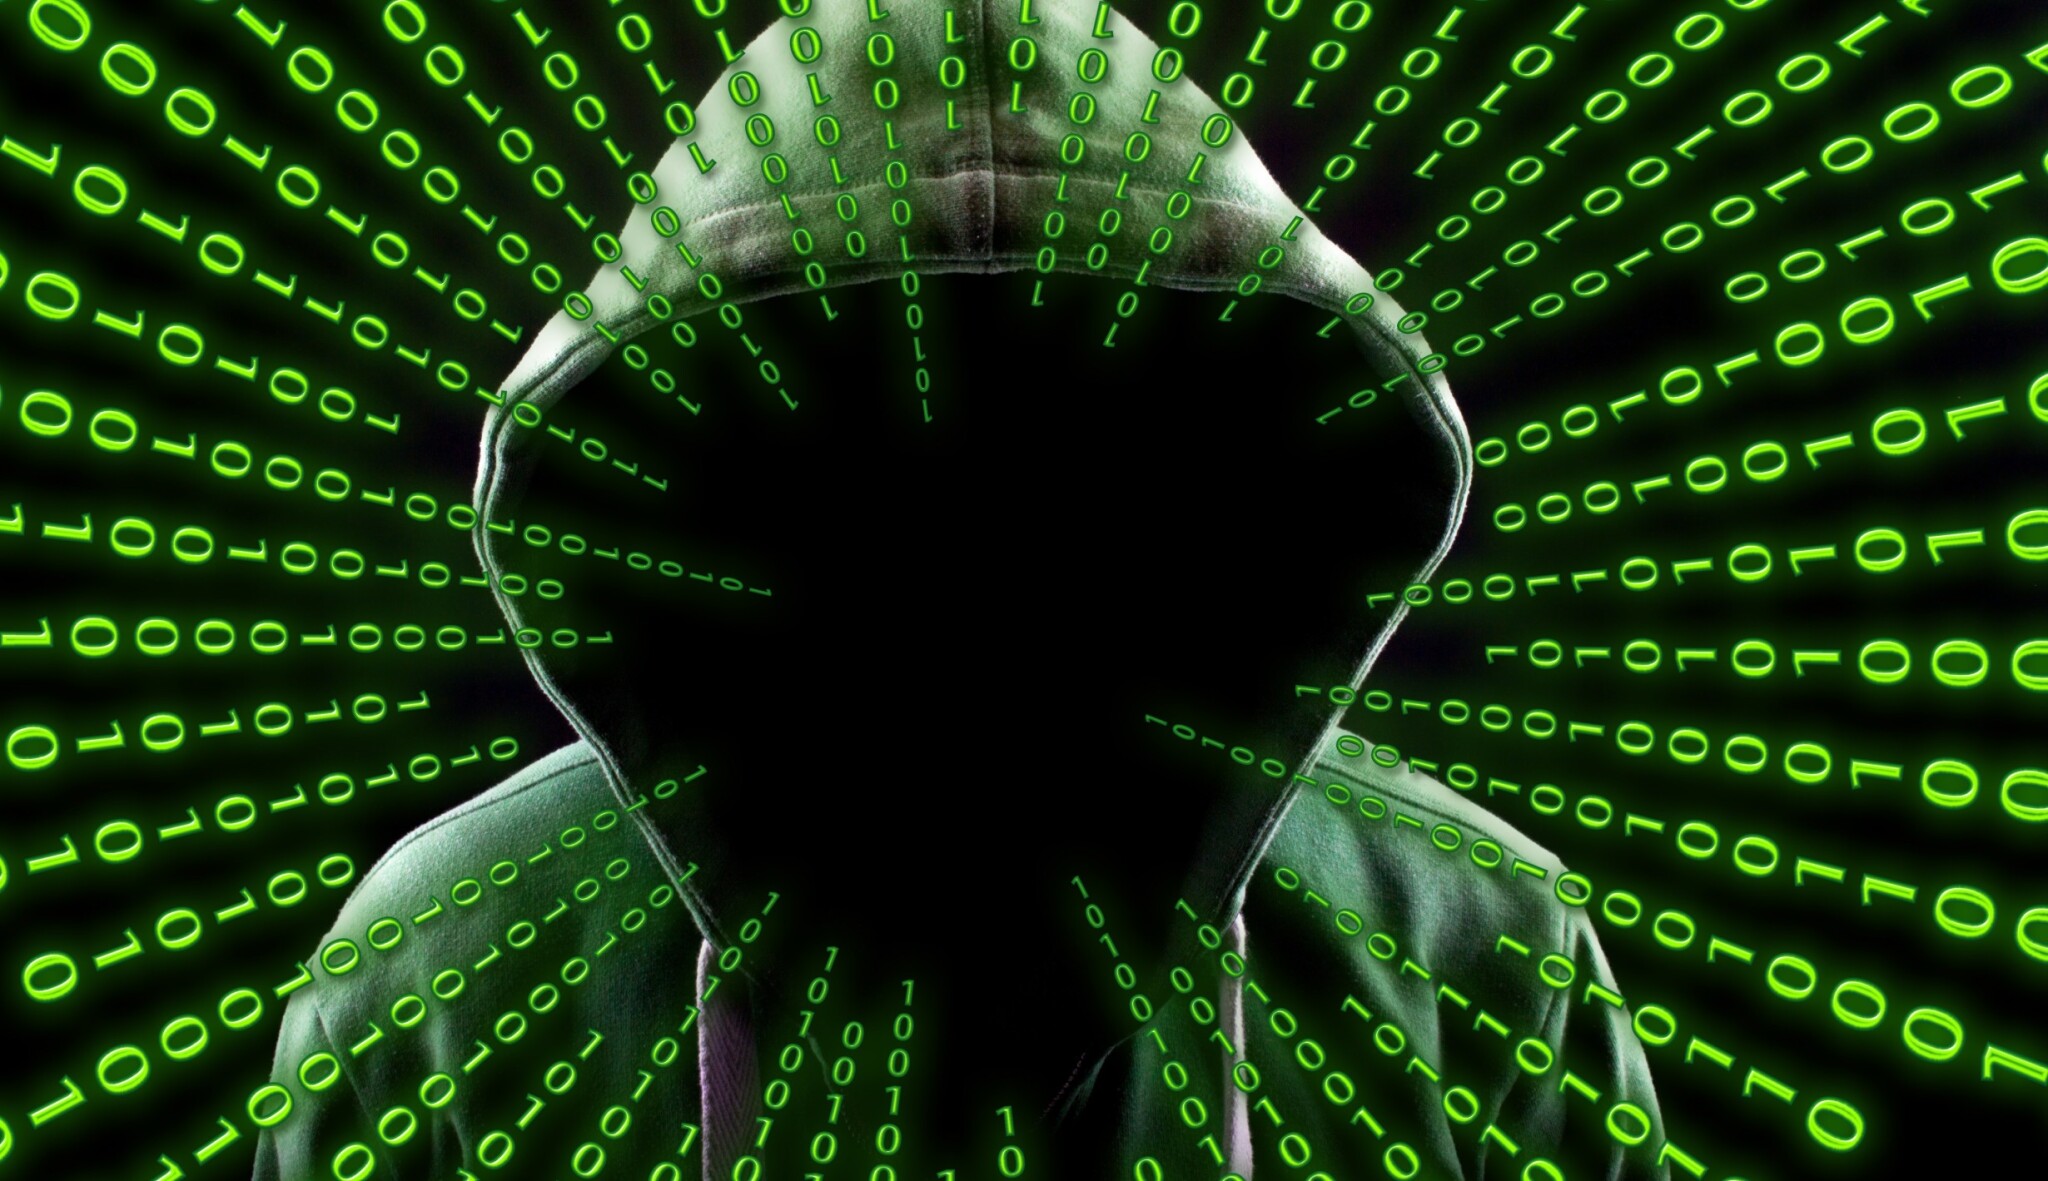 Úřad pro kybernetickou bezpečnost varuje před útoky. V příštích dnech budou narůstat